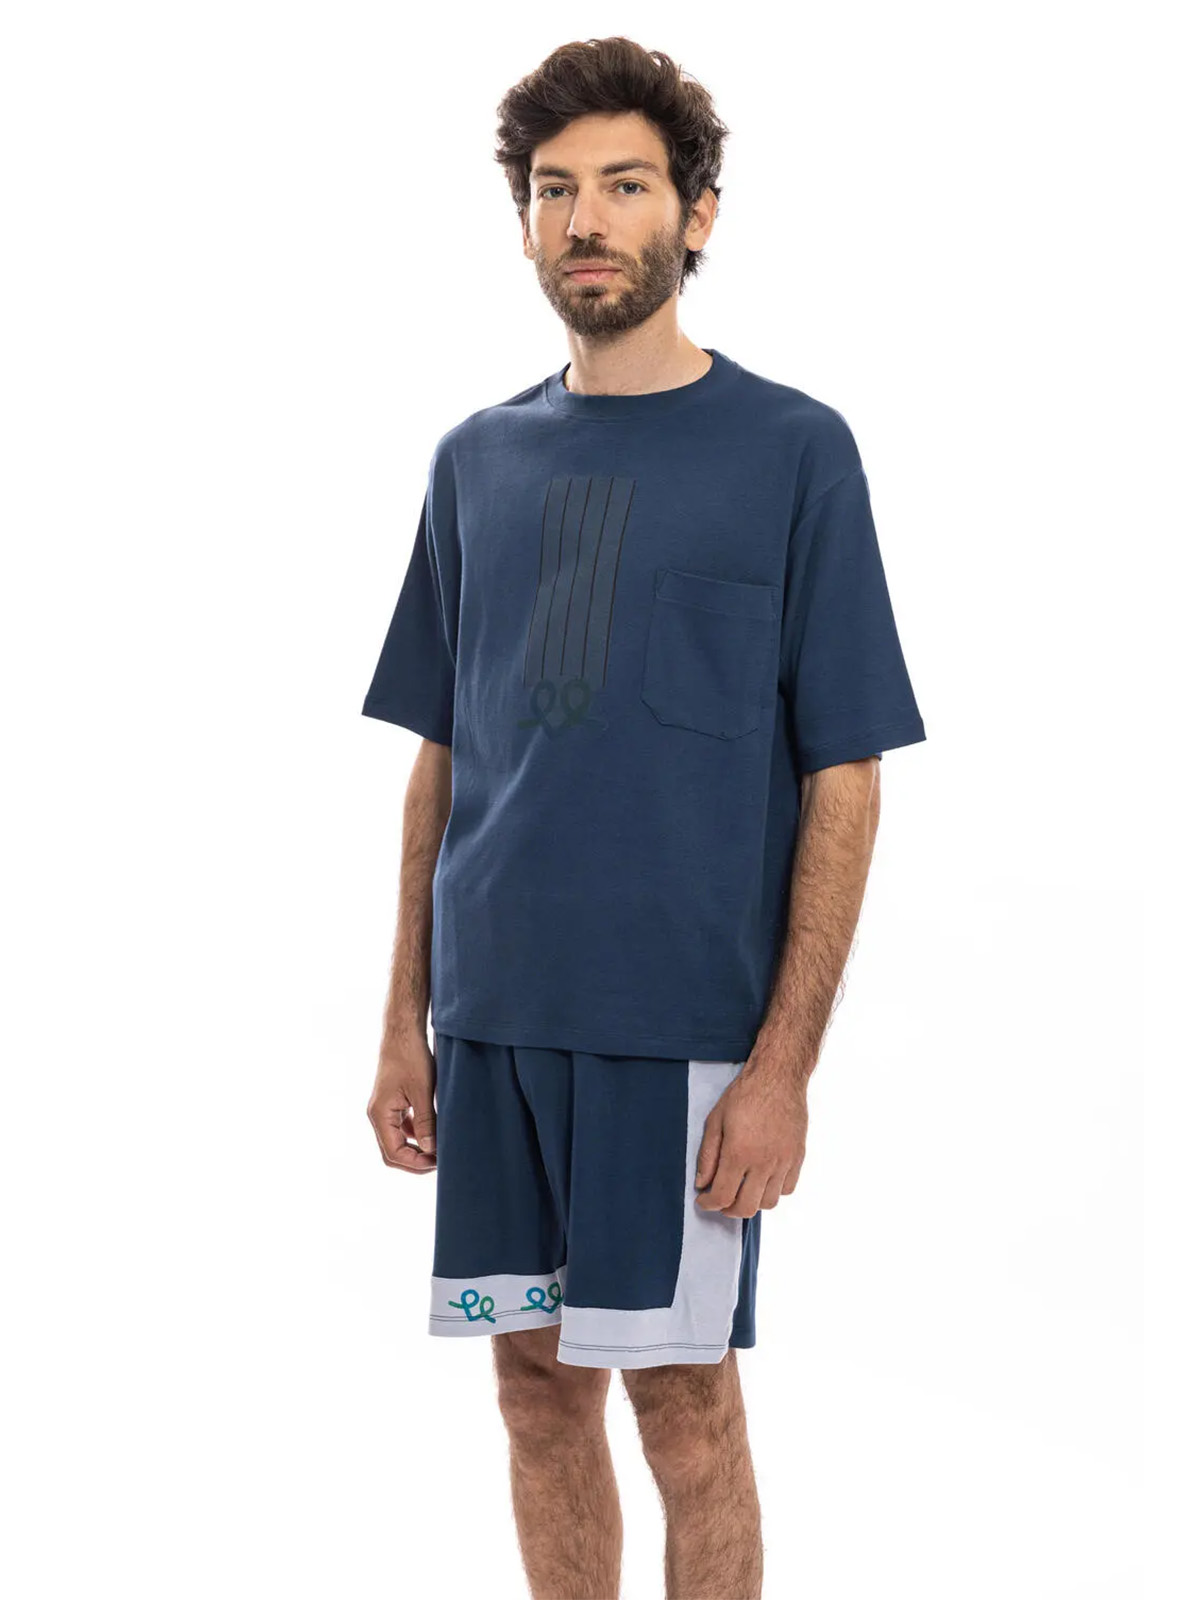 דורון אשכנזי, עיצוב בגדי פנאי לאברבנאל (צילום: דרור כץ. המצולמים אינם מטופלים בבית החולים)